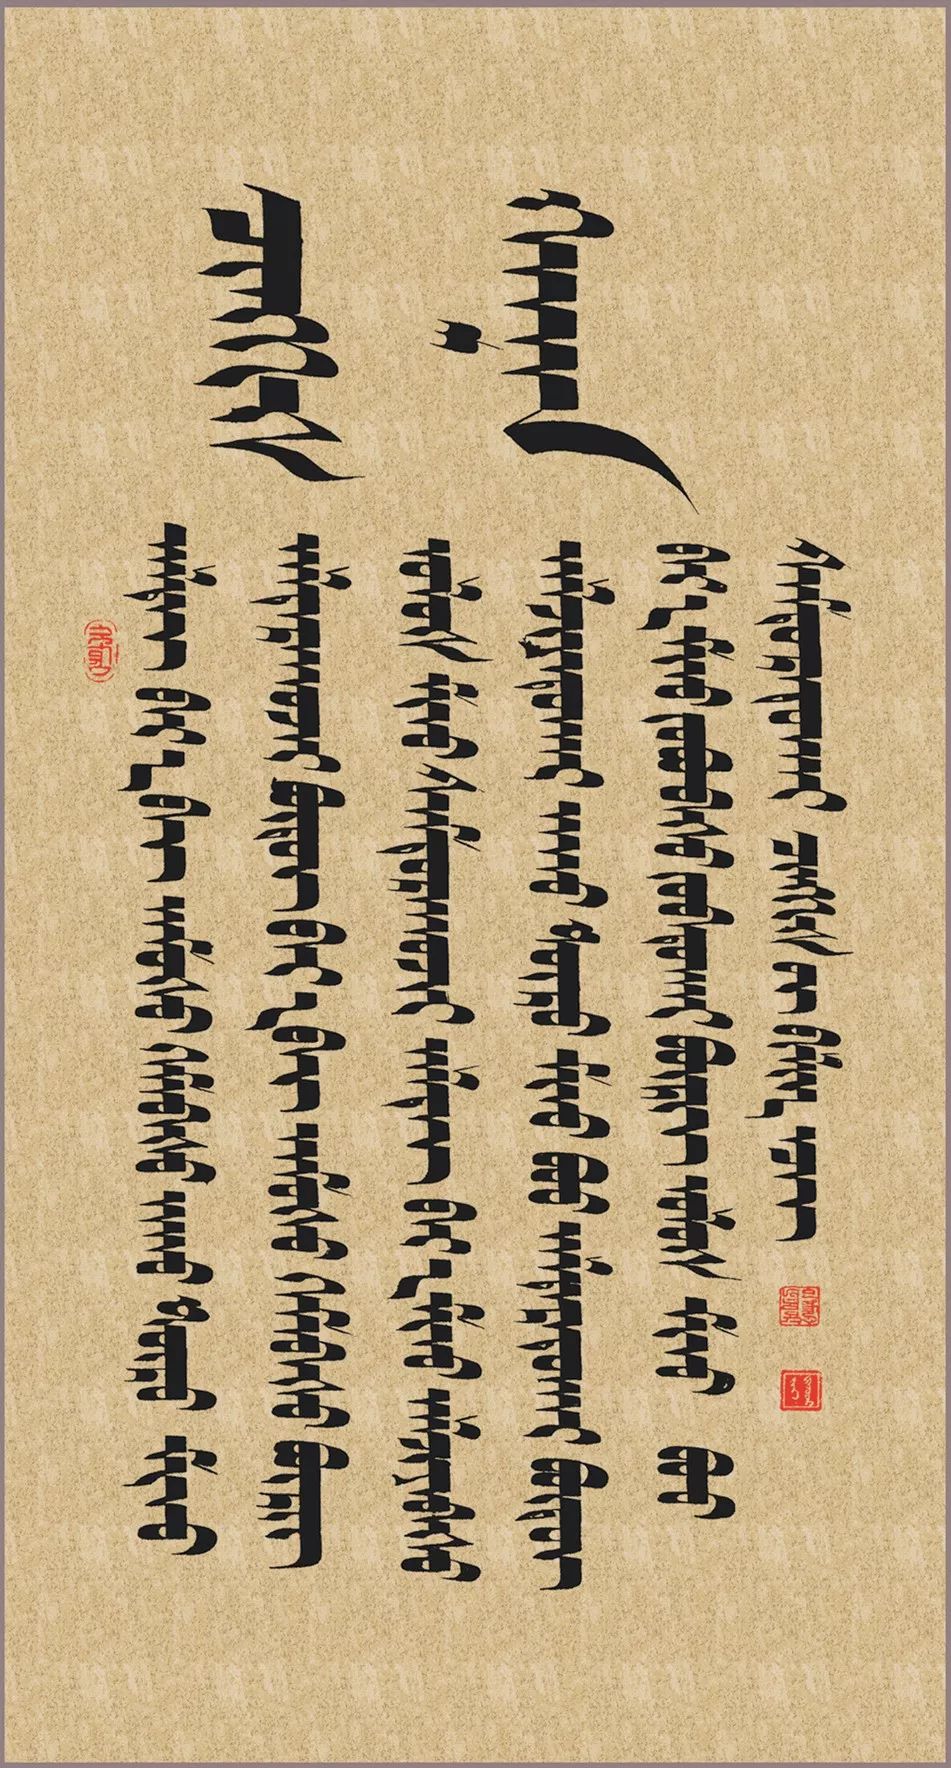 周五展 | 蒙古文书法家席•银柱印象 第12张